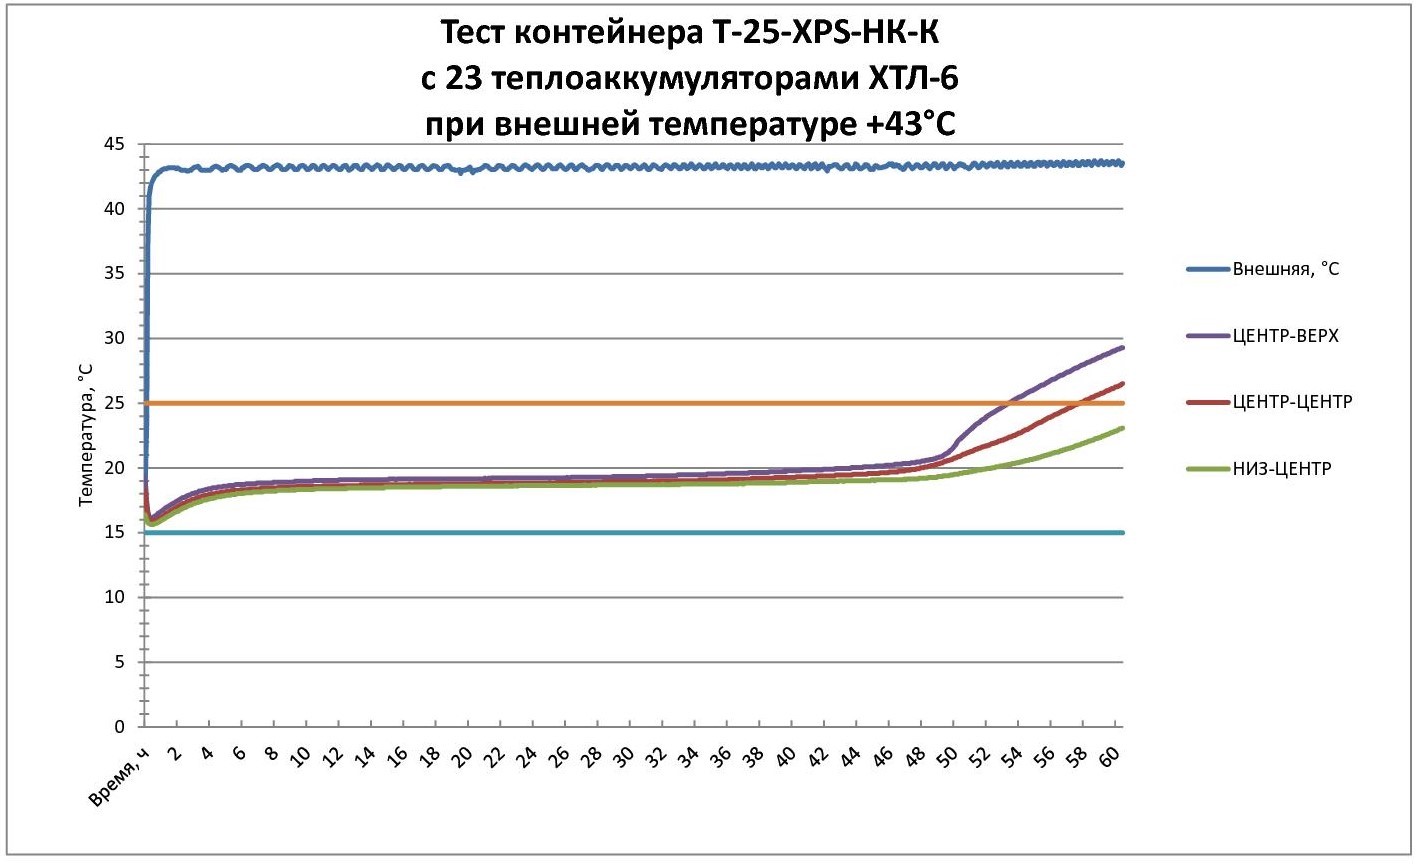 Тест термоконтейнера на 25 литров с теплоаккумуляторами (хладоэлементами) ХТЛ-6 при внешней температуре +43град